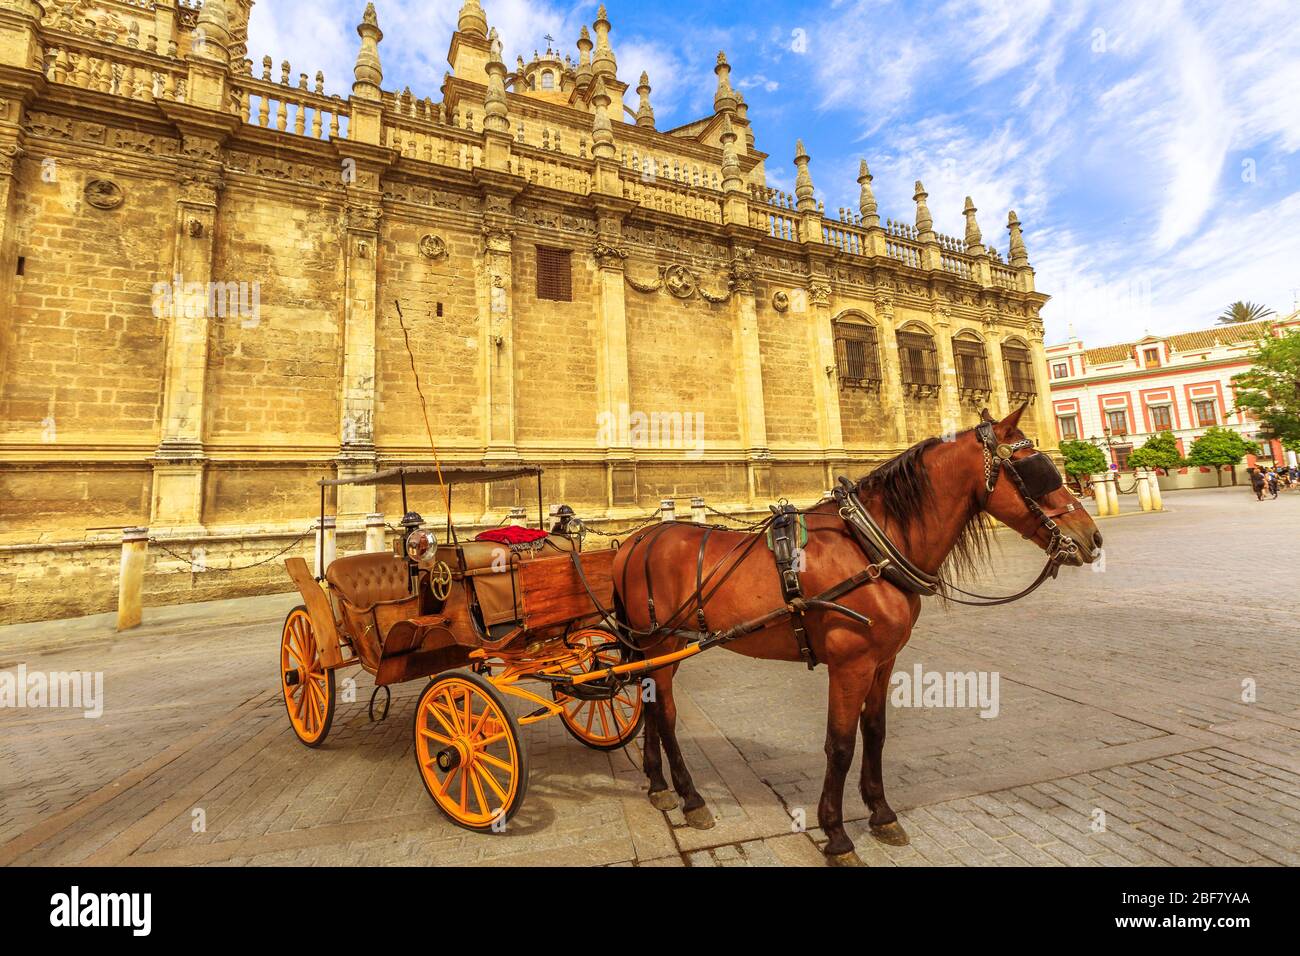 Cavallo spagnolo parcheggiato vicino alla Cattedrale di Siviglia, una cattedrale cattolica romana e la più grande chiesa gotica, è una delle attrazioni turistiche di Foto Stock